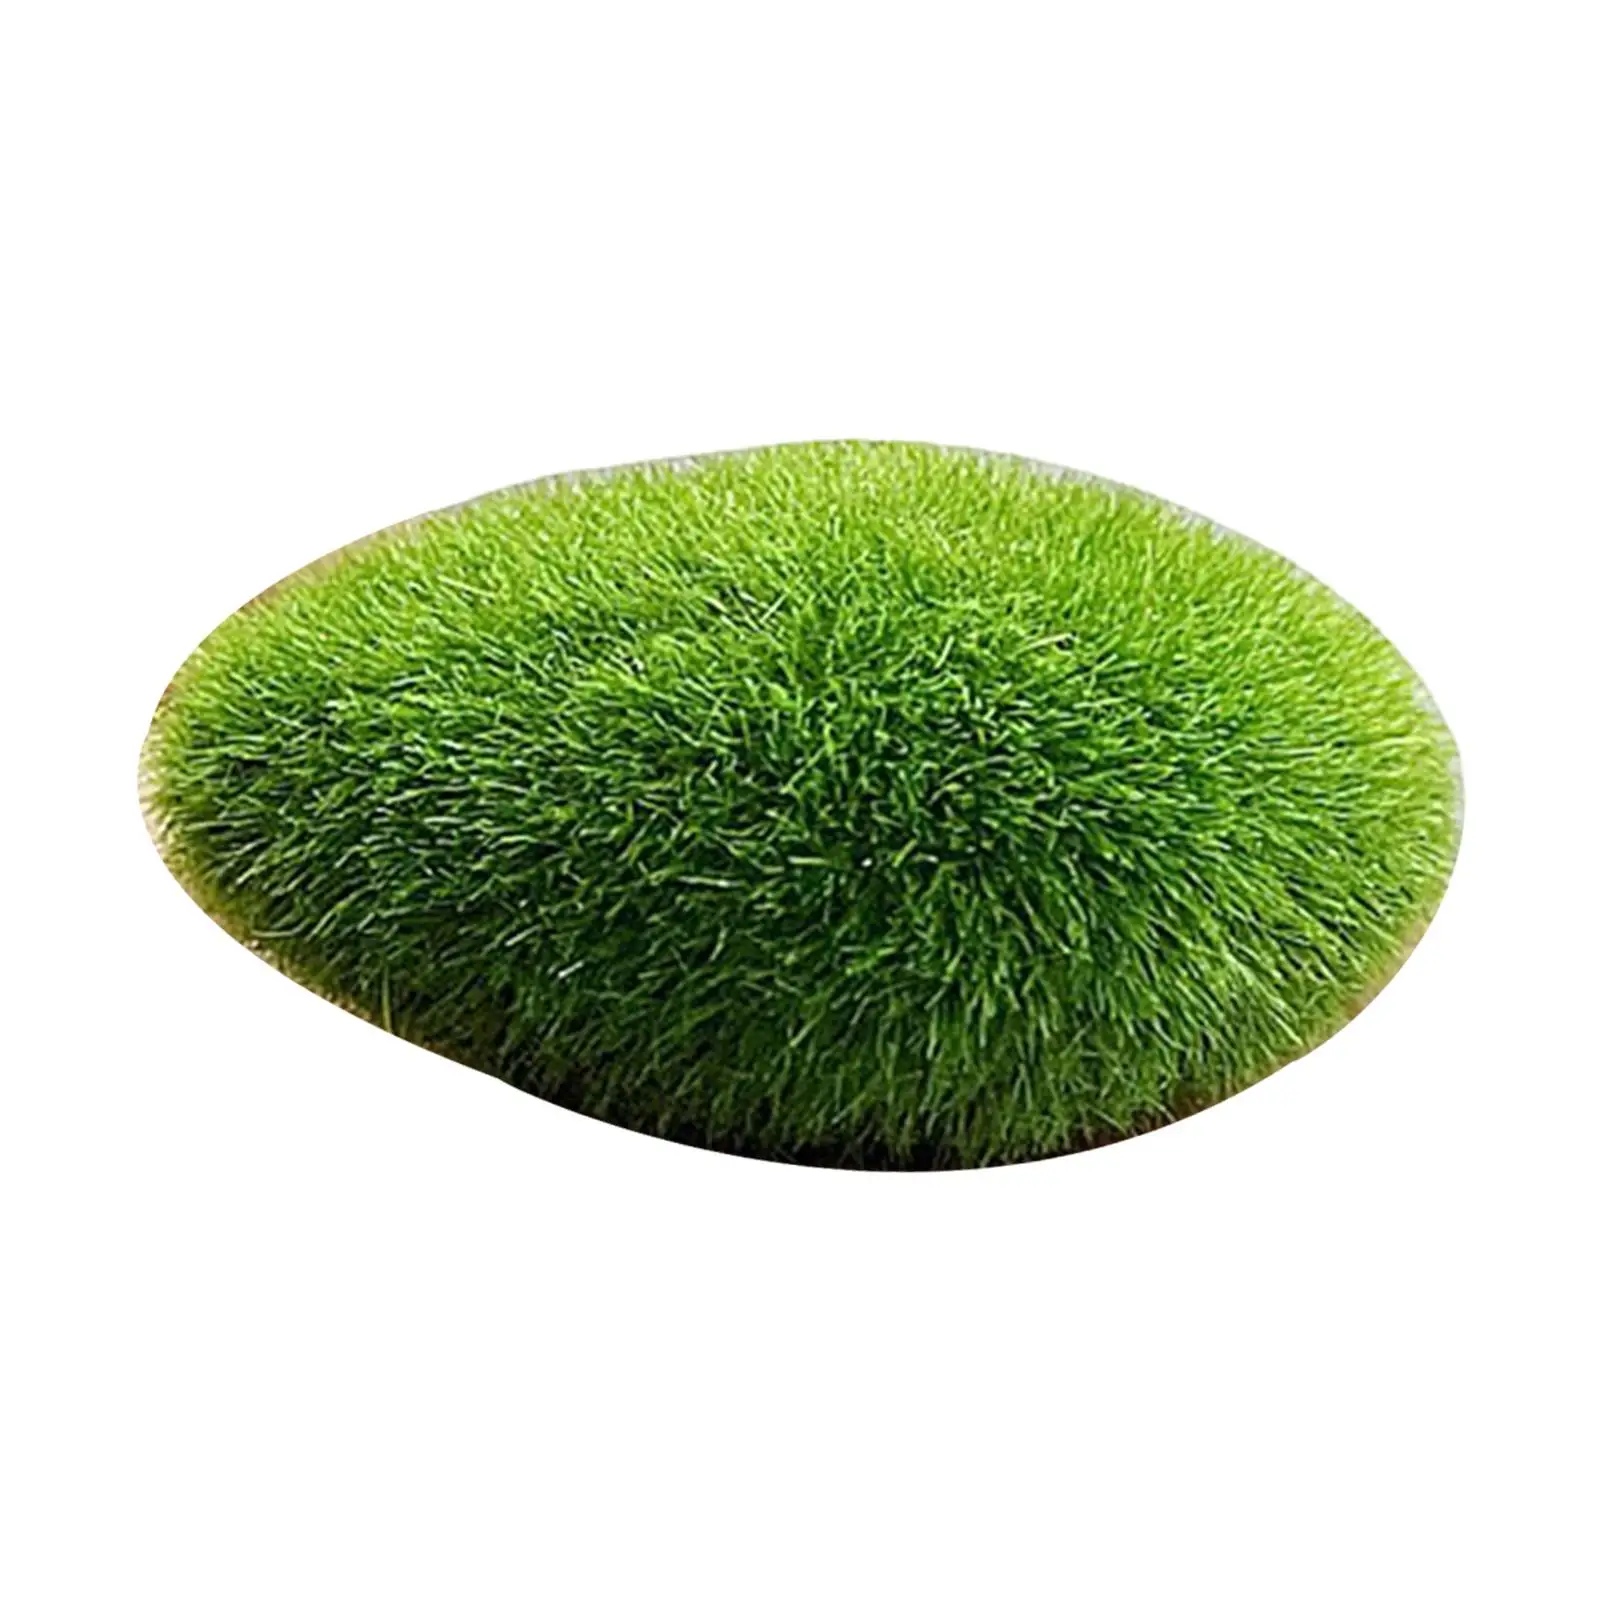 Artificial Moss Rocks Moss Stones Green Moss Balls Faux Bryophytes Mini for Miniature Garden Weddings Home Decor